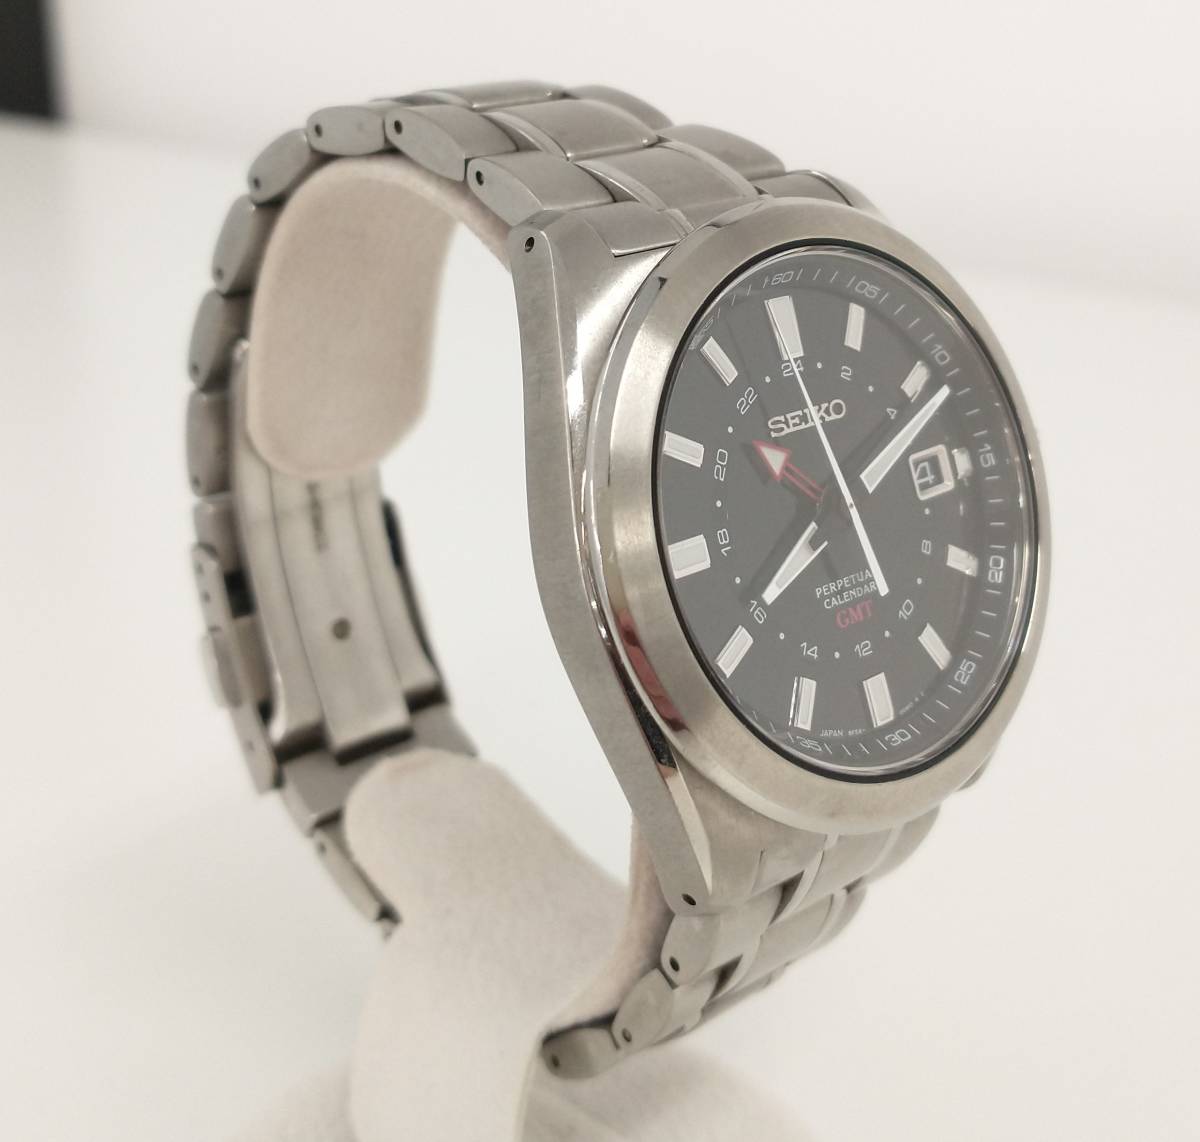 SEIKO セイコー GMT 8F56-00M0 パーペチュアルカレンダー 腕時計(アナログ) 安い取扱店